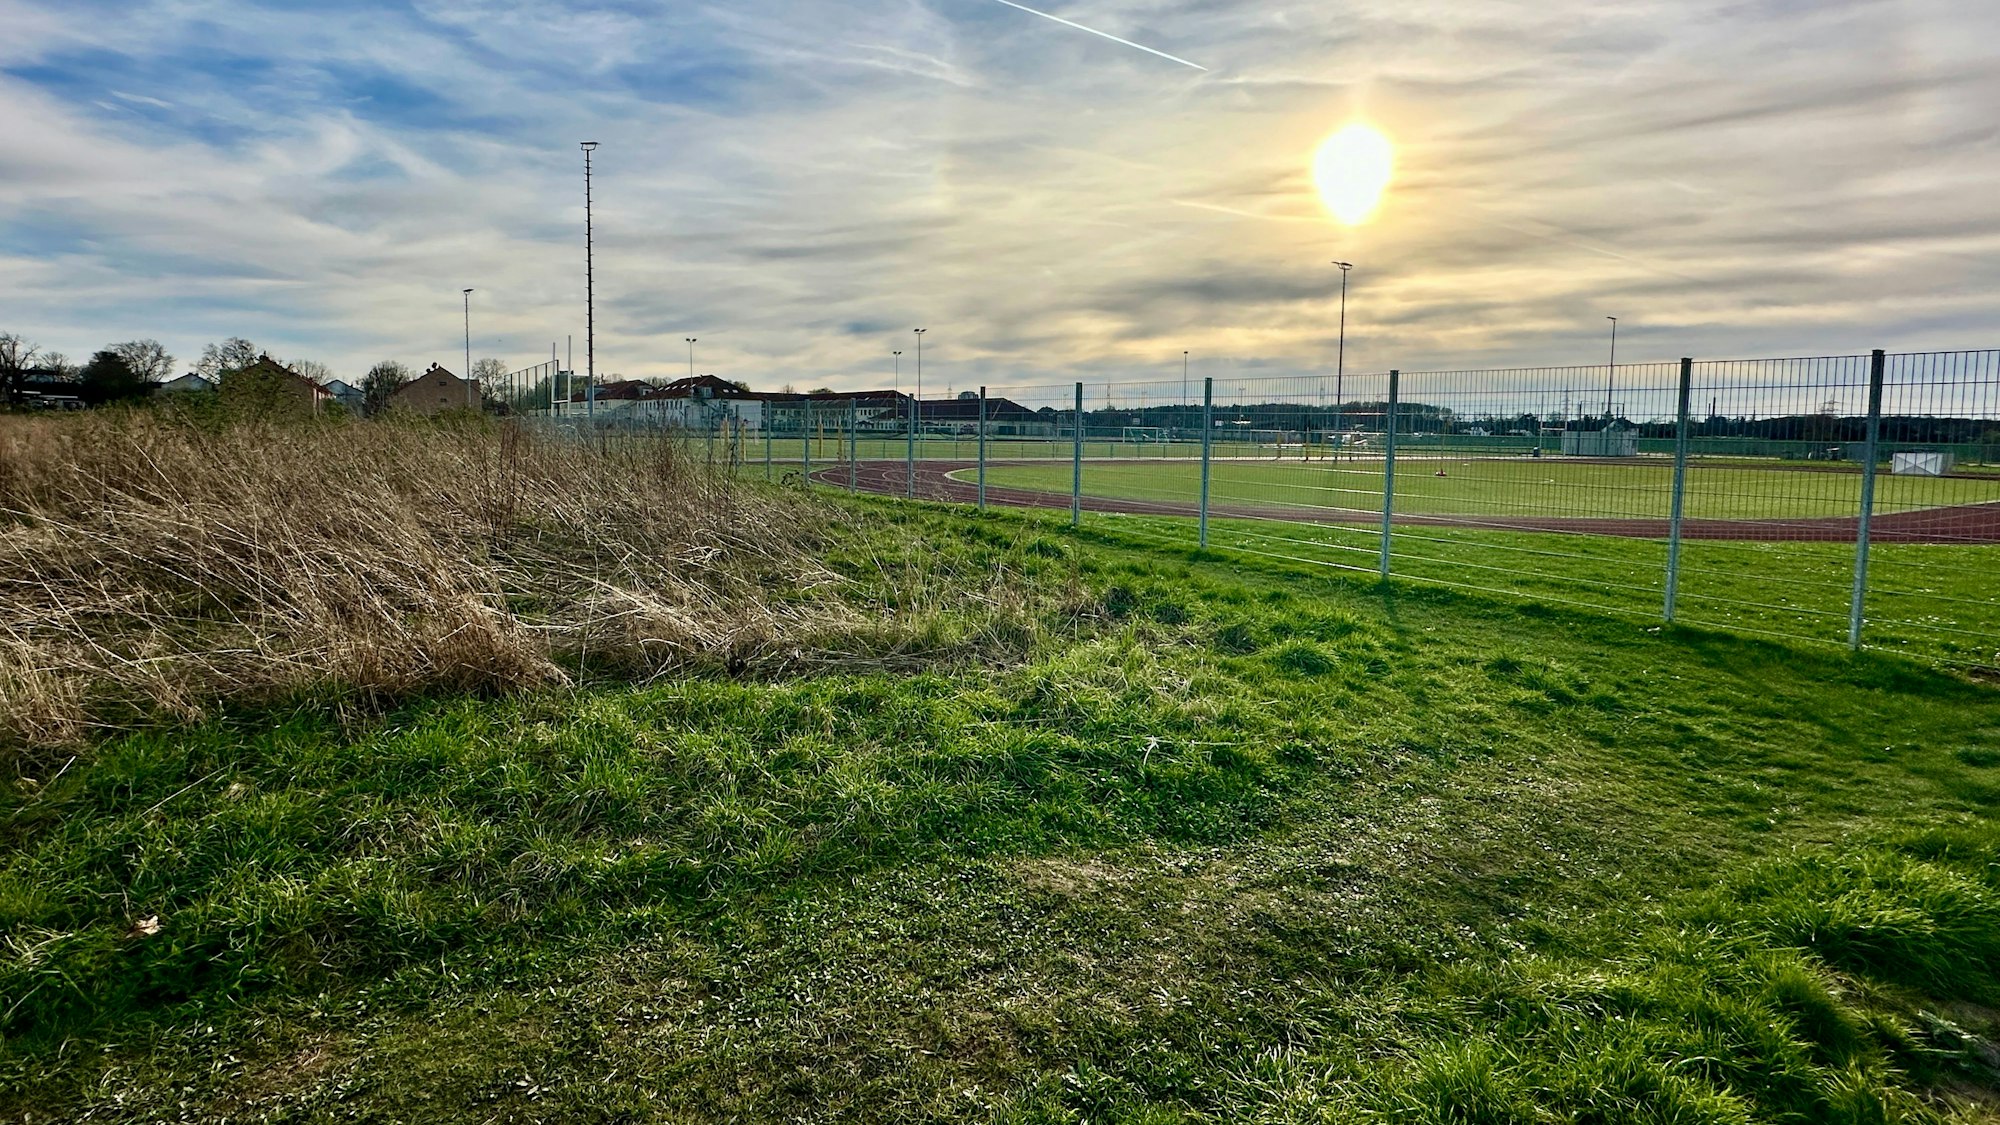 Im Neubaugebiet Rondorf Nordwest wird derzeit ein Investor gesucht, der eine Grundschule errichten will. Im Plan ist das Gebiet neben dem Sportplatz der St. George School eingezeichnet.